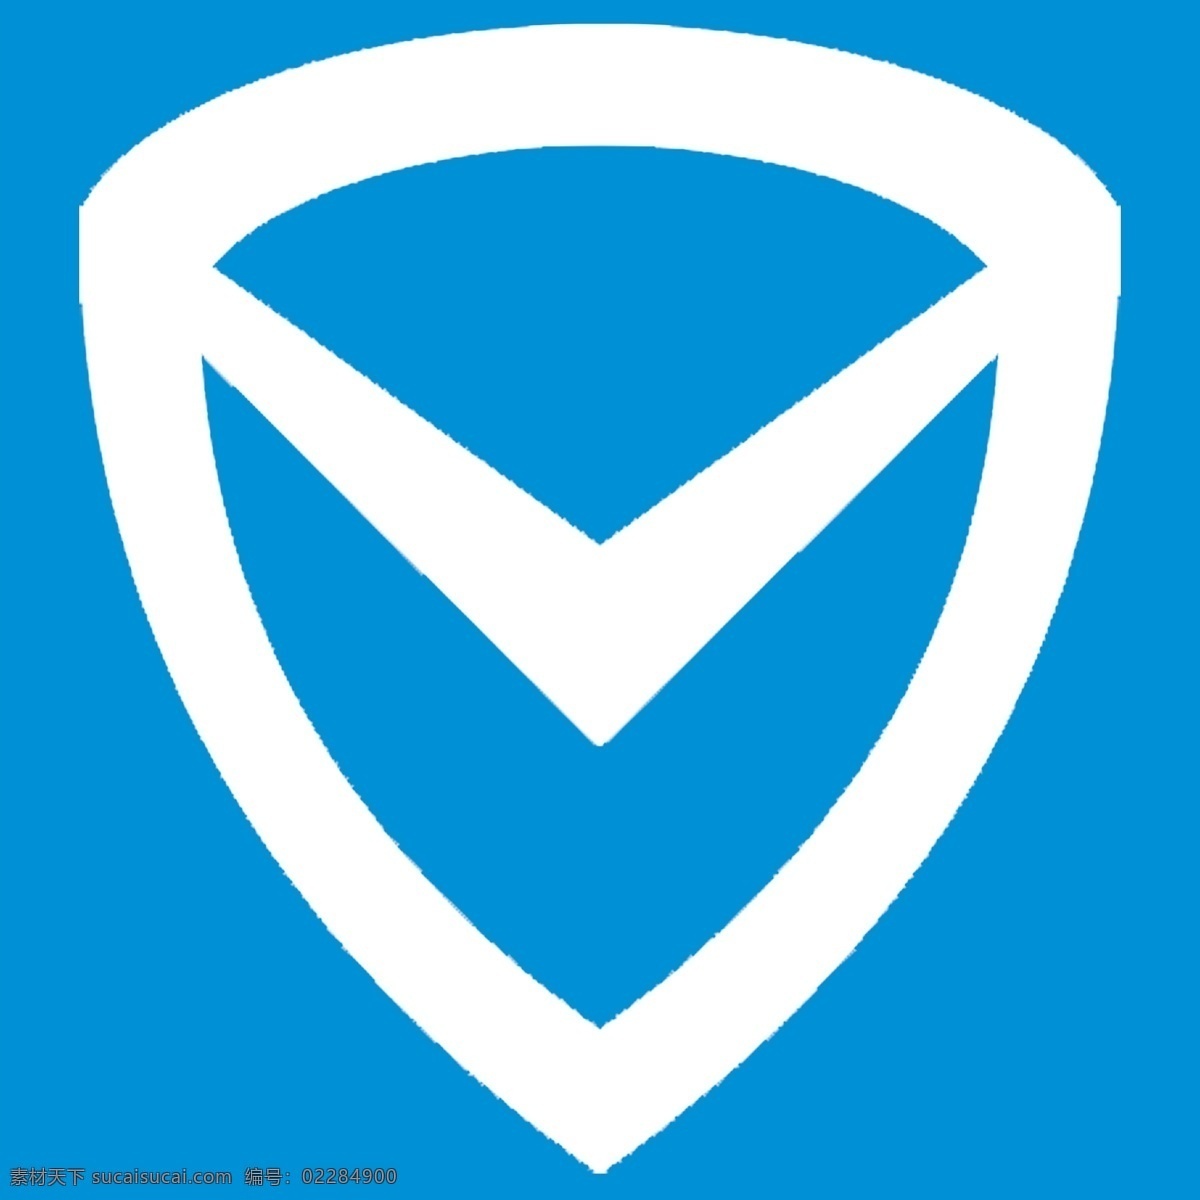 2014 腾讯 电脑 管家 logo logo下载 2014logo qq 其他图标 标志图标